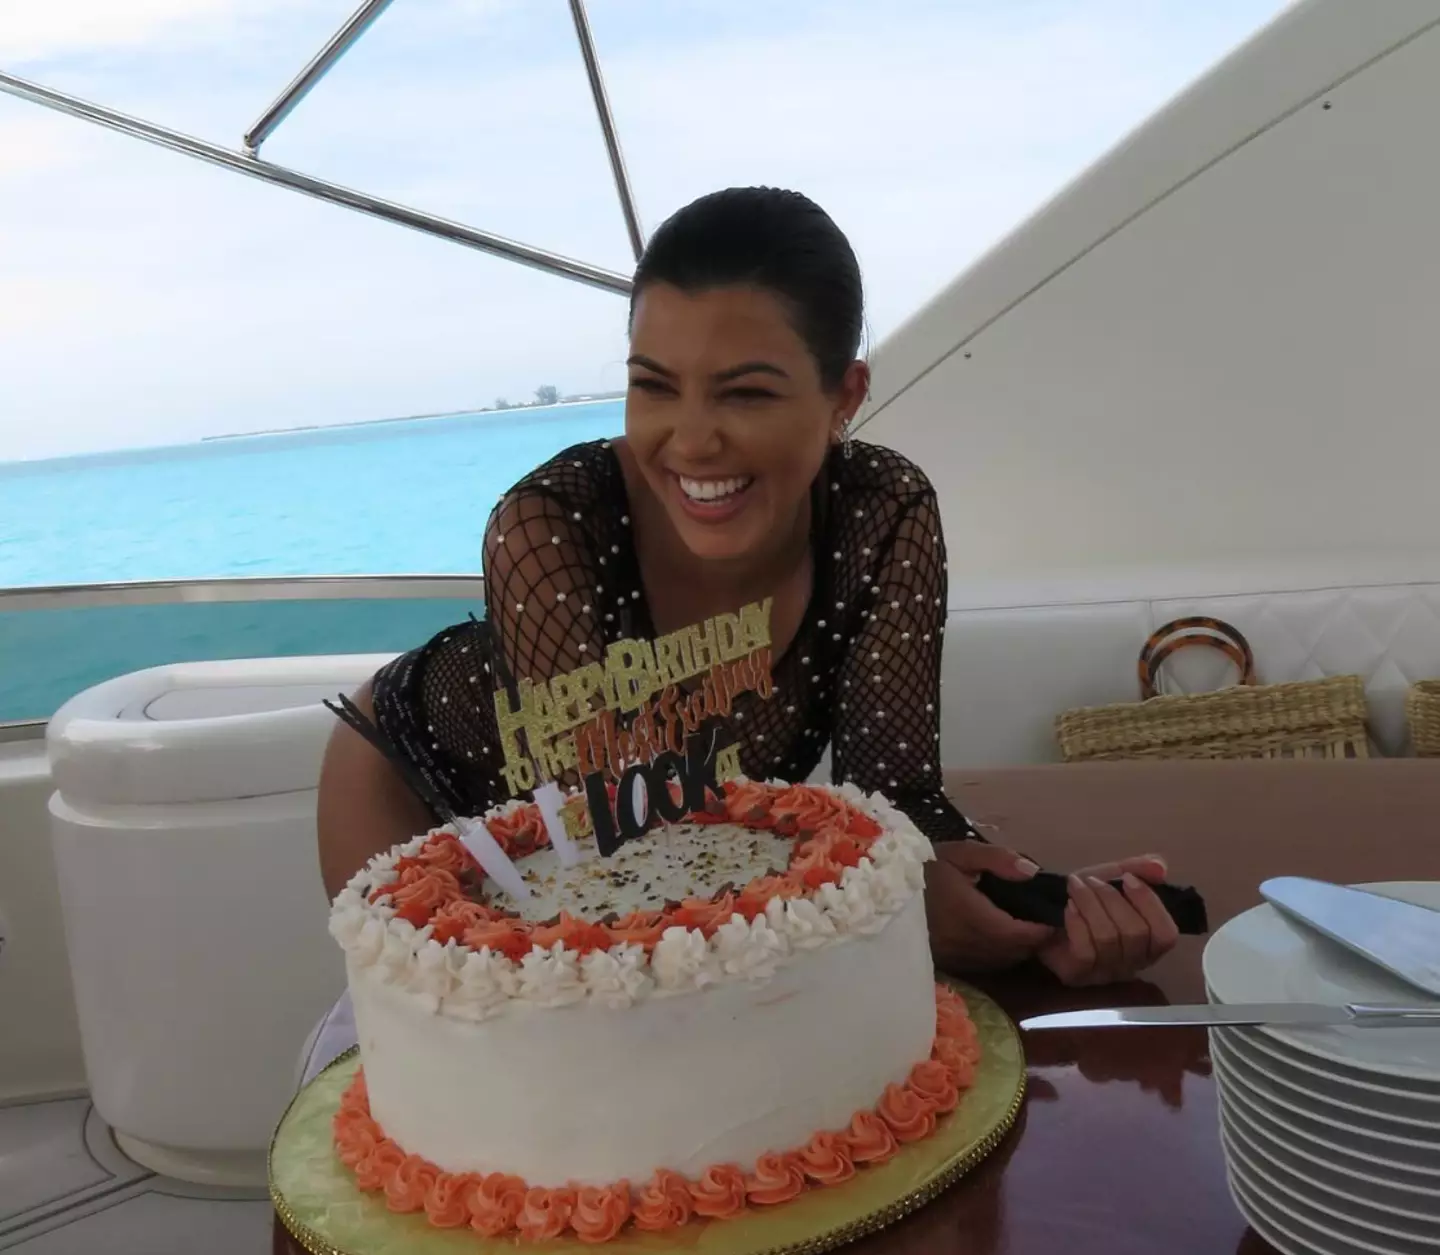 Kourtney Kardashian had a cake topper inspired by a feud. (Instagram/@kourtneykardash)